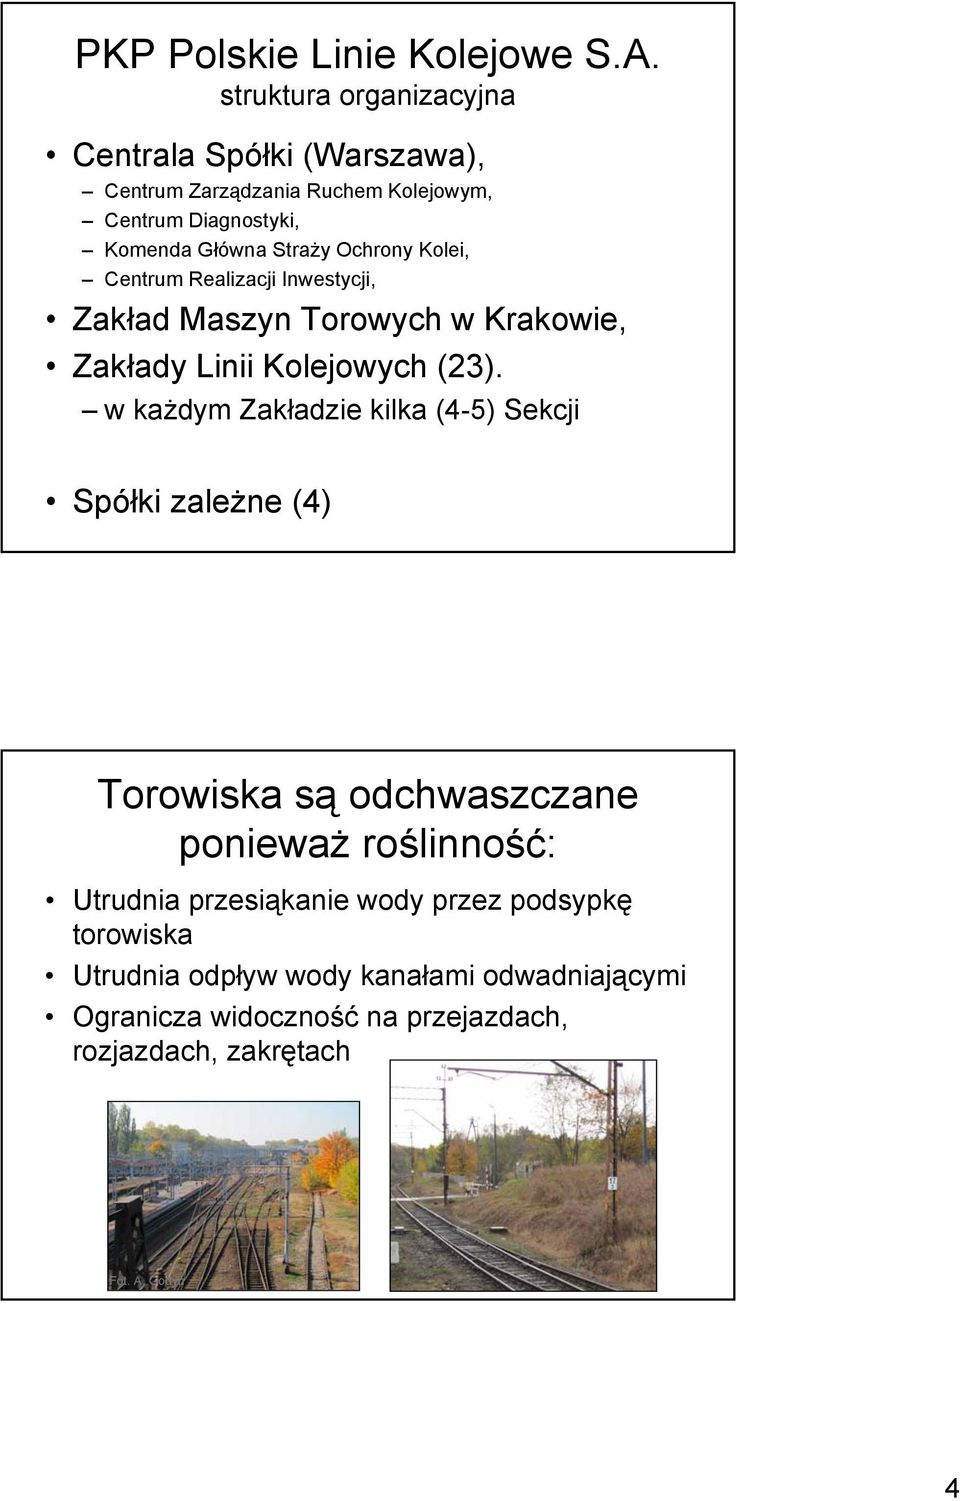 Ochrony Kolei, Centrum Realizacji Inwestycji, Zakład Maszyn Torowych w Krakowie, Zakłady Linii Kolejowych (23).